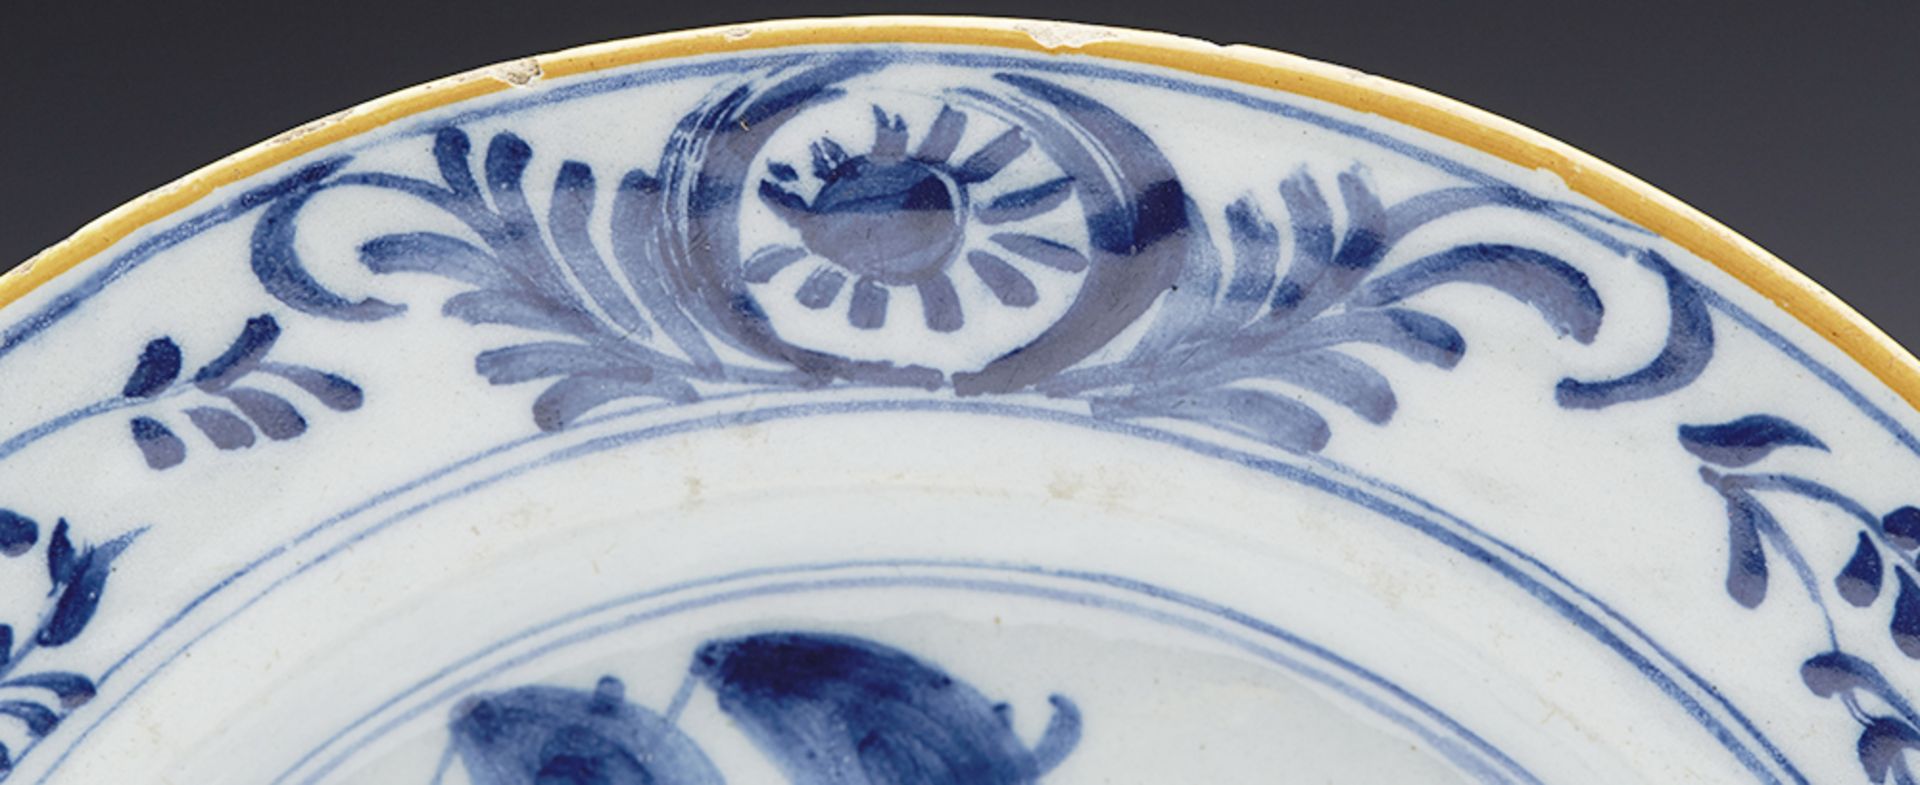 Pair Antique Dutch Delft Blue And White Floral Design Plates 18Th C. - Bild 6 aus 13